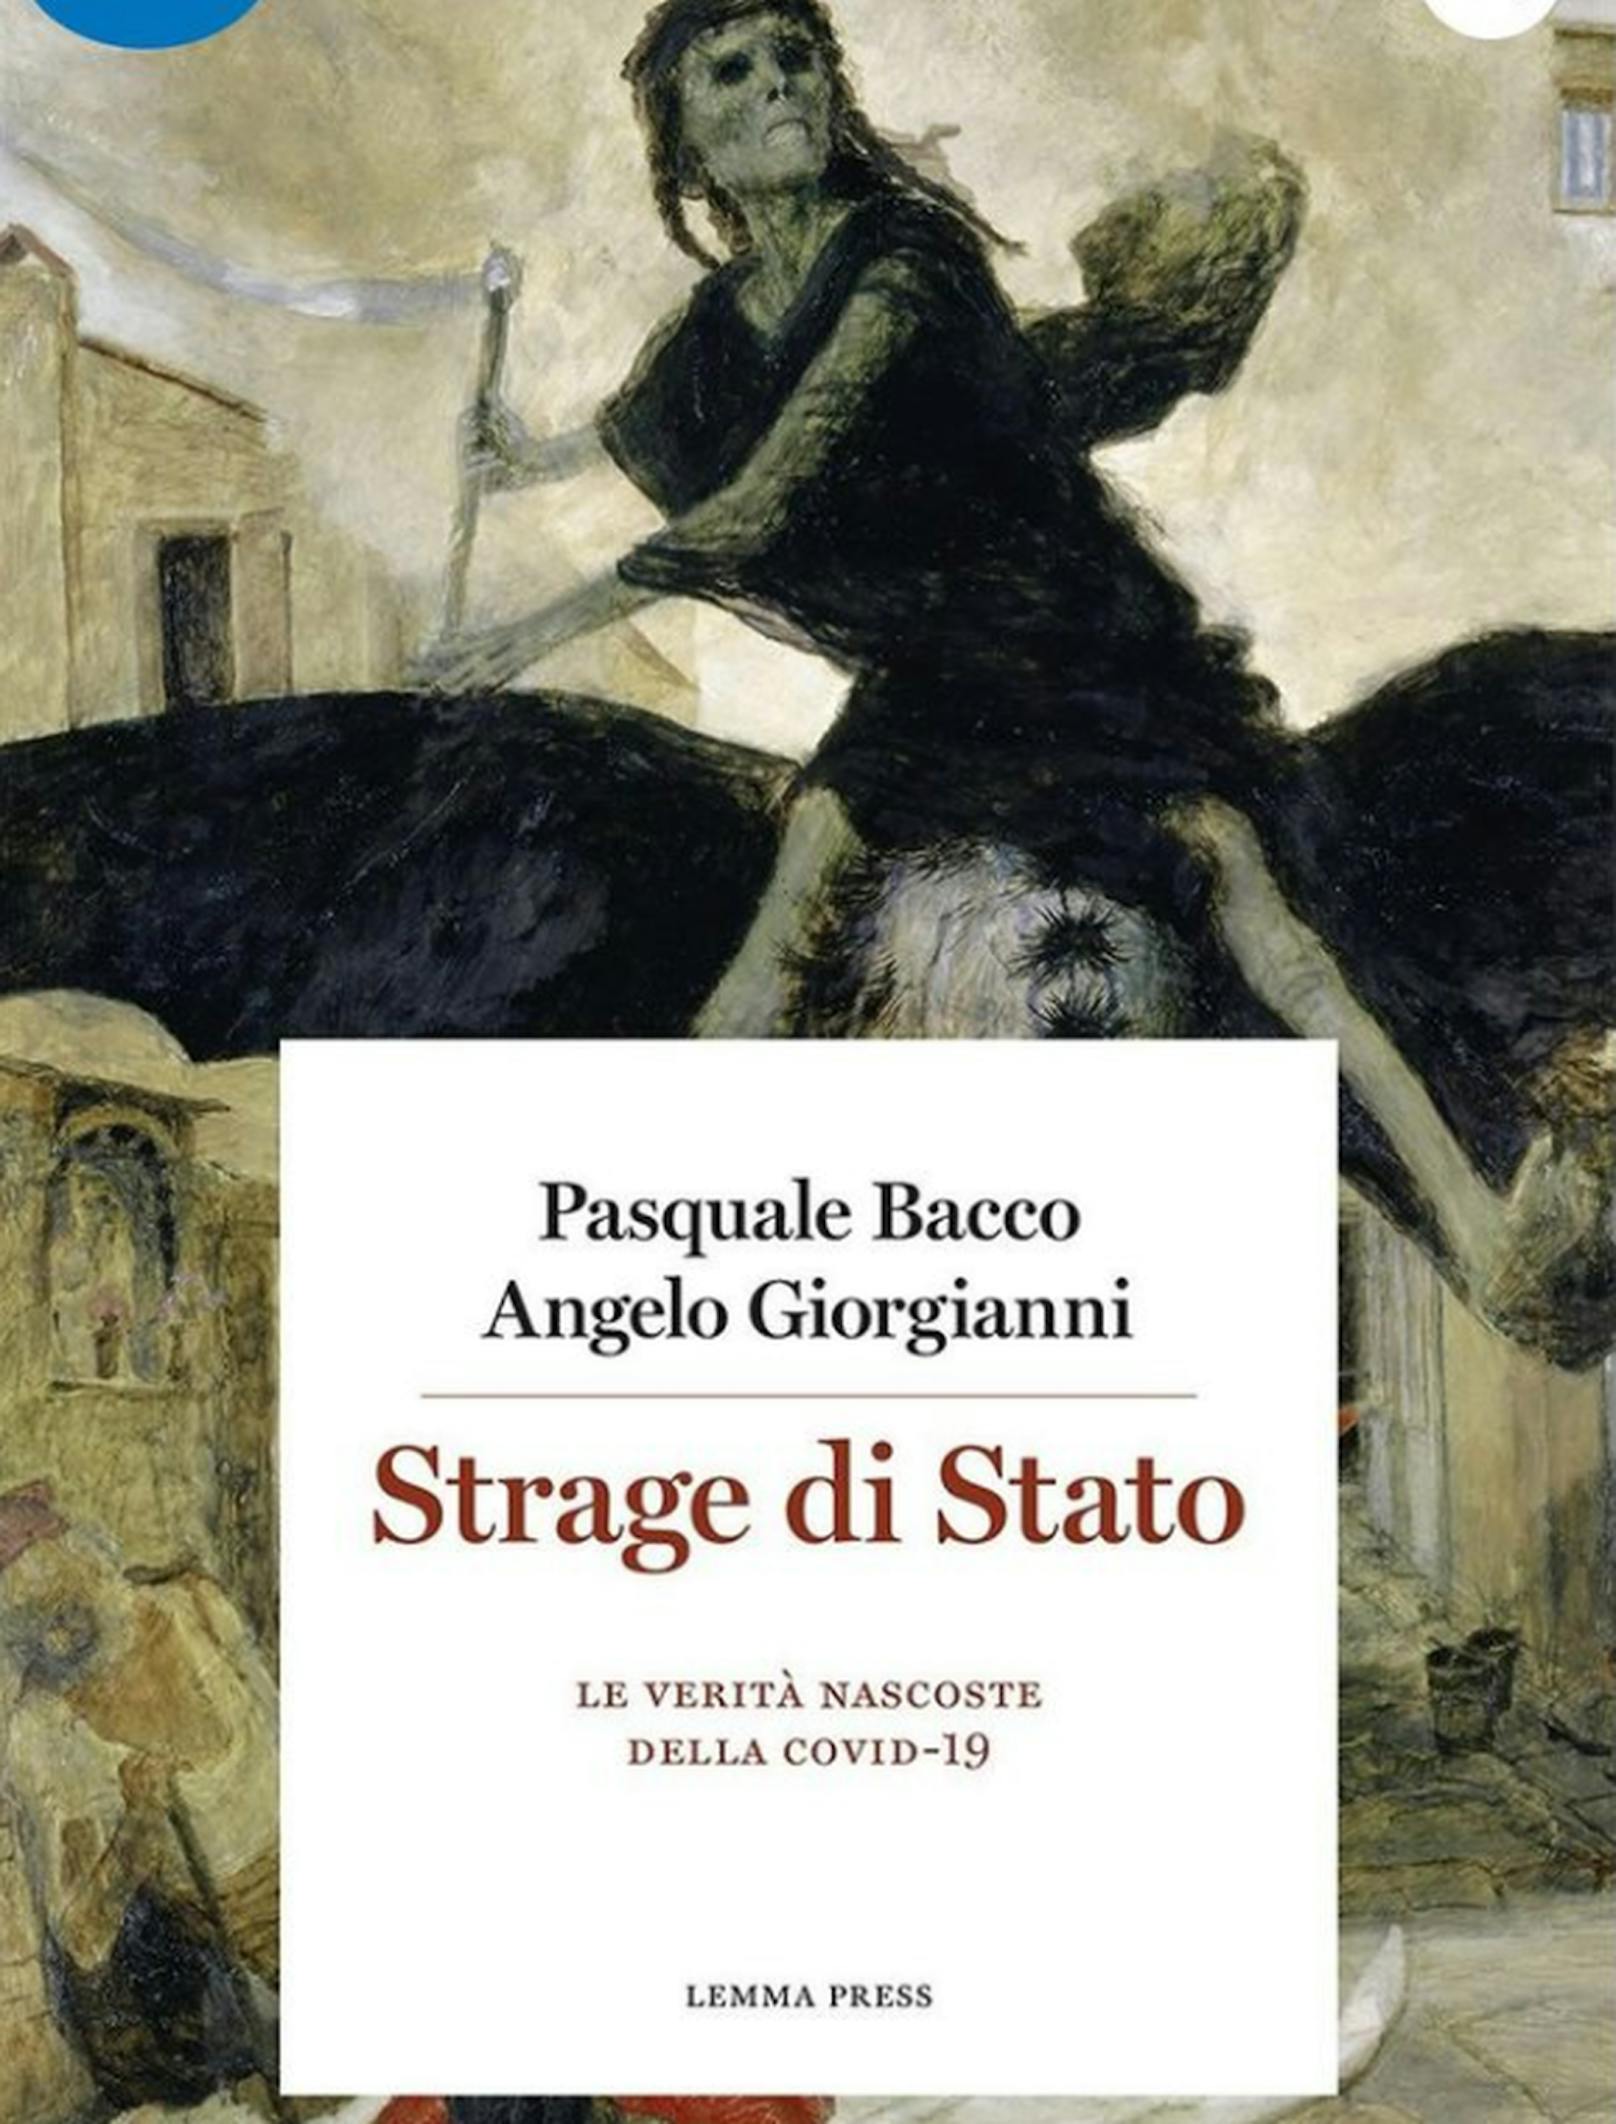 Er schrieb sogar ein Buch darüber: "Una strage di Stato» – übersetzt "Ein Staatsmassaker". Heute bereut Bacco seine Aktionen.